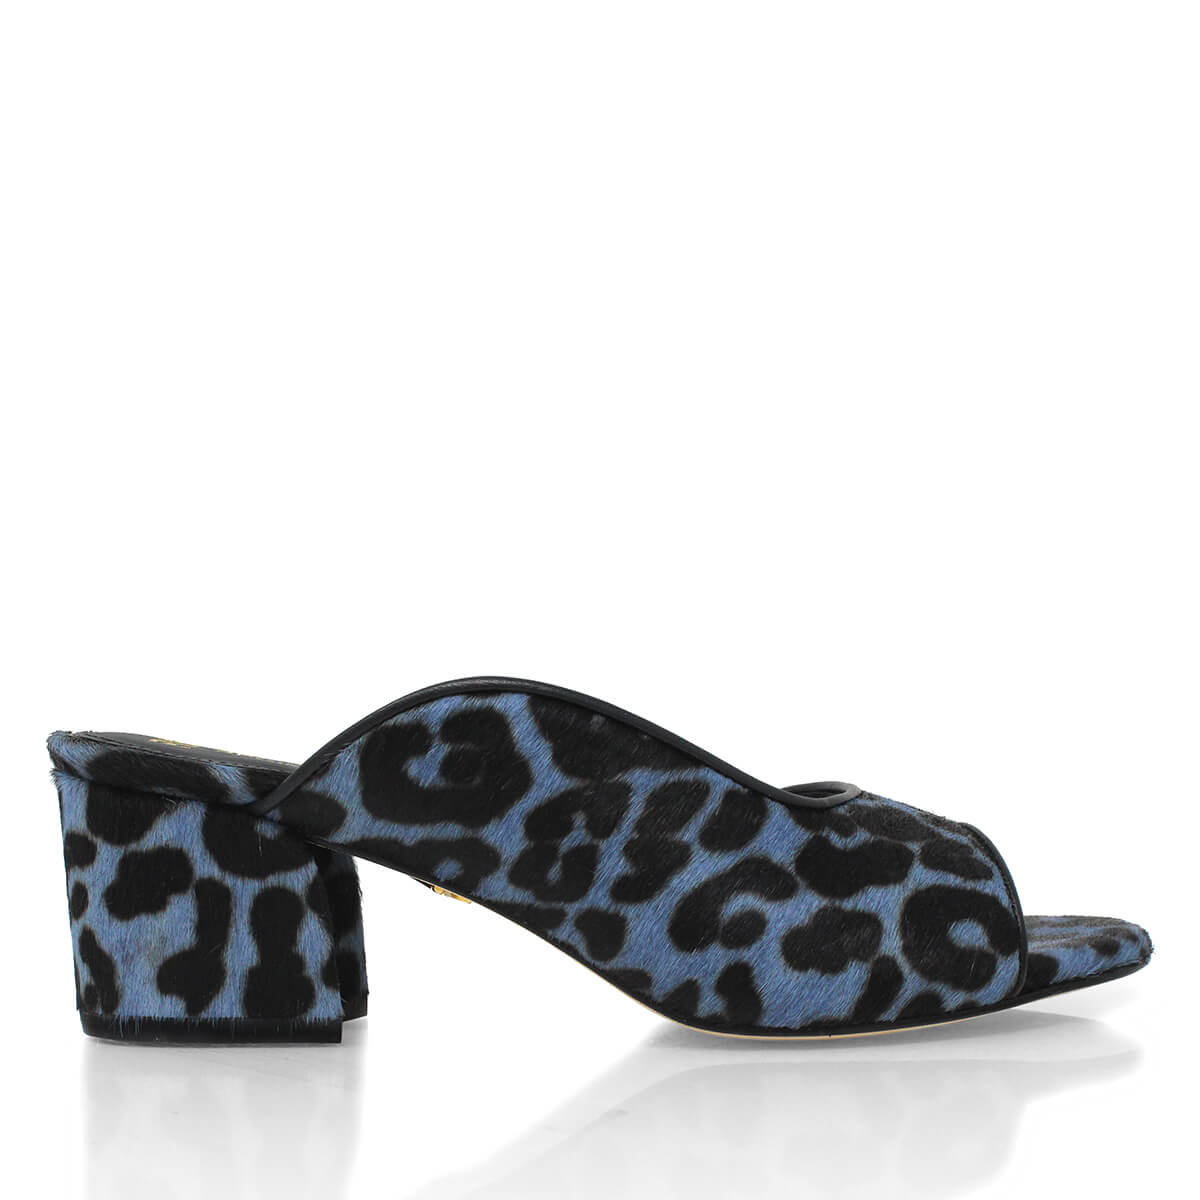 MIAMI 55 - Blue Regina Romero Low Heel Sandal Shoe for Women in Leather